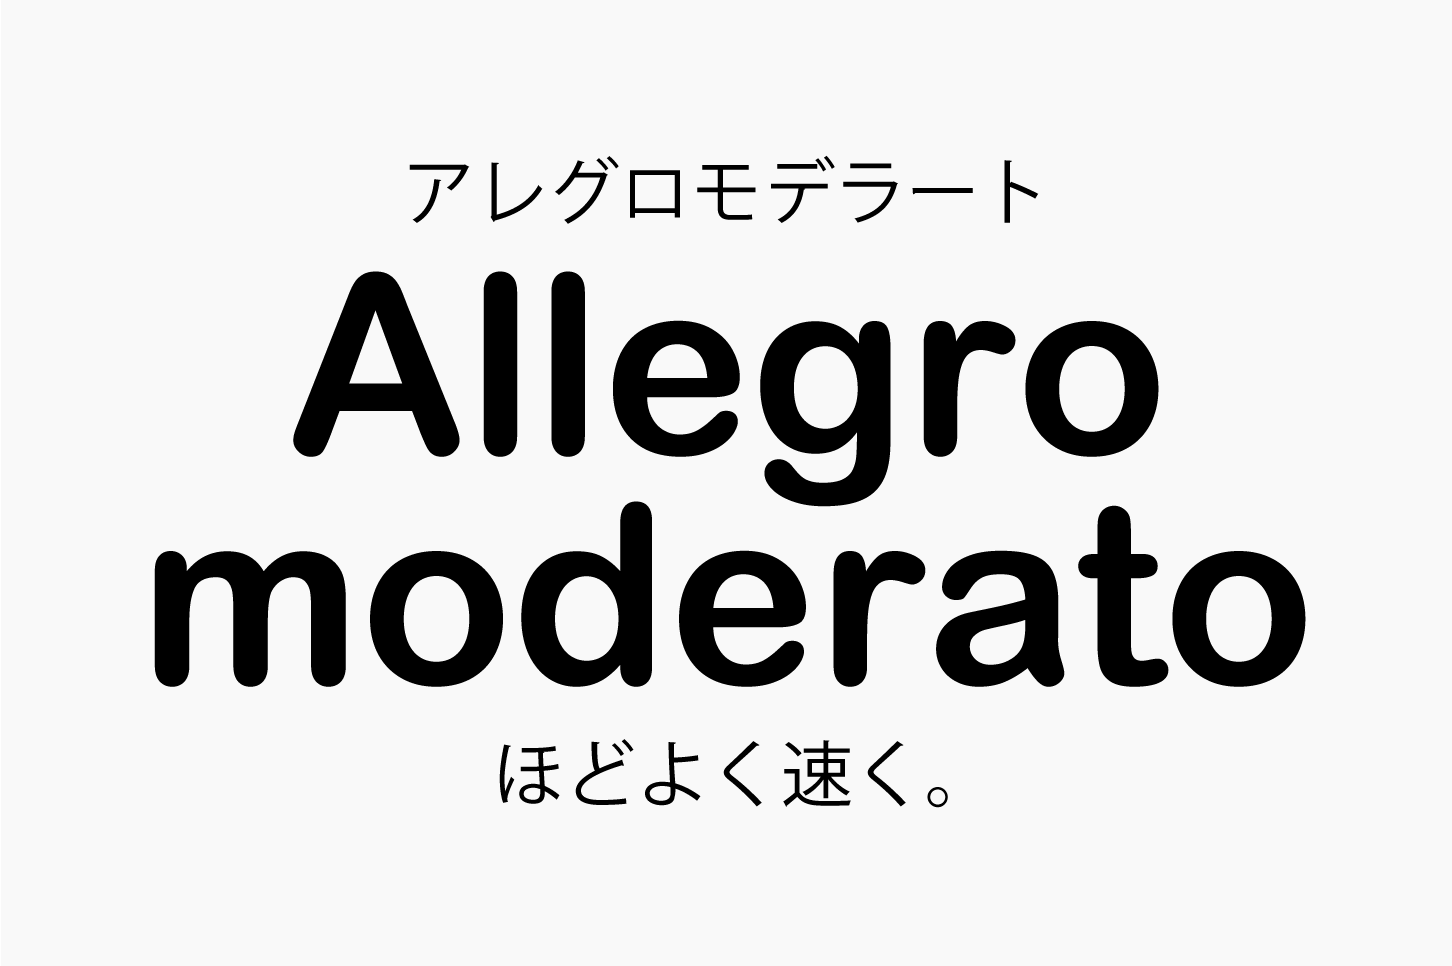 Allegro moderato（アレグロモデラート）ほどよく速く。